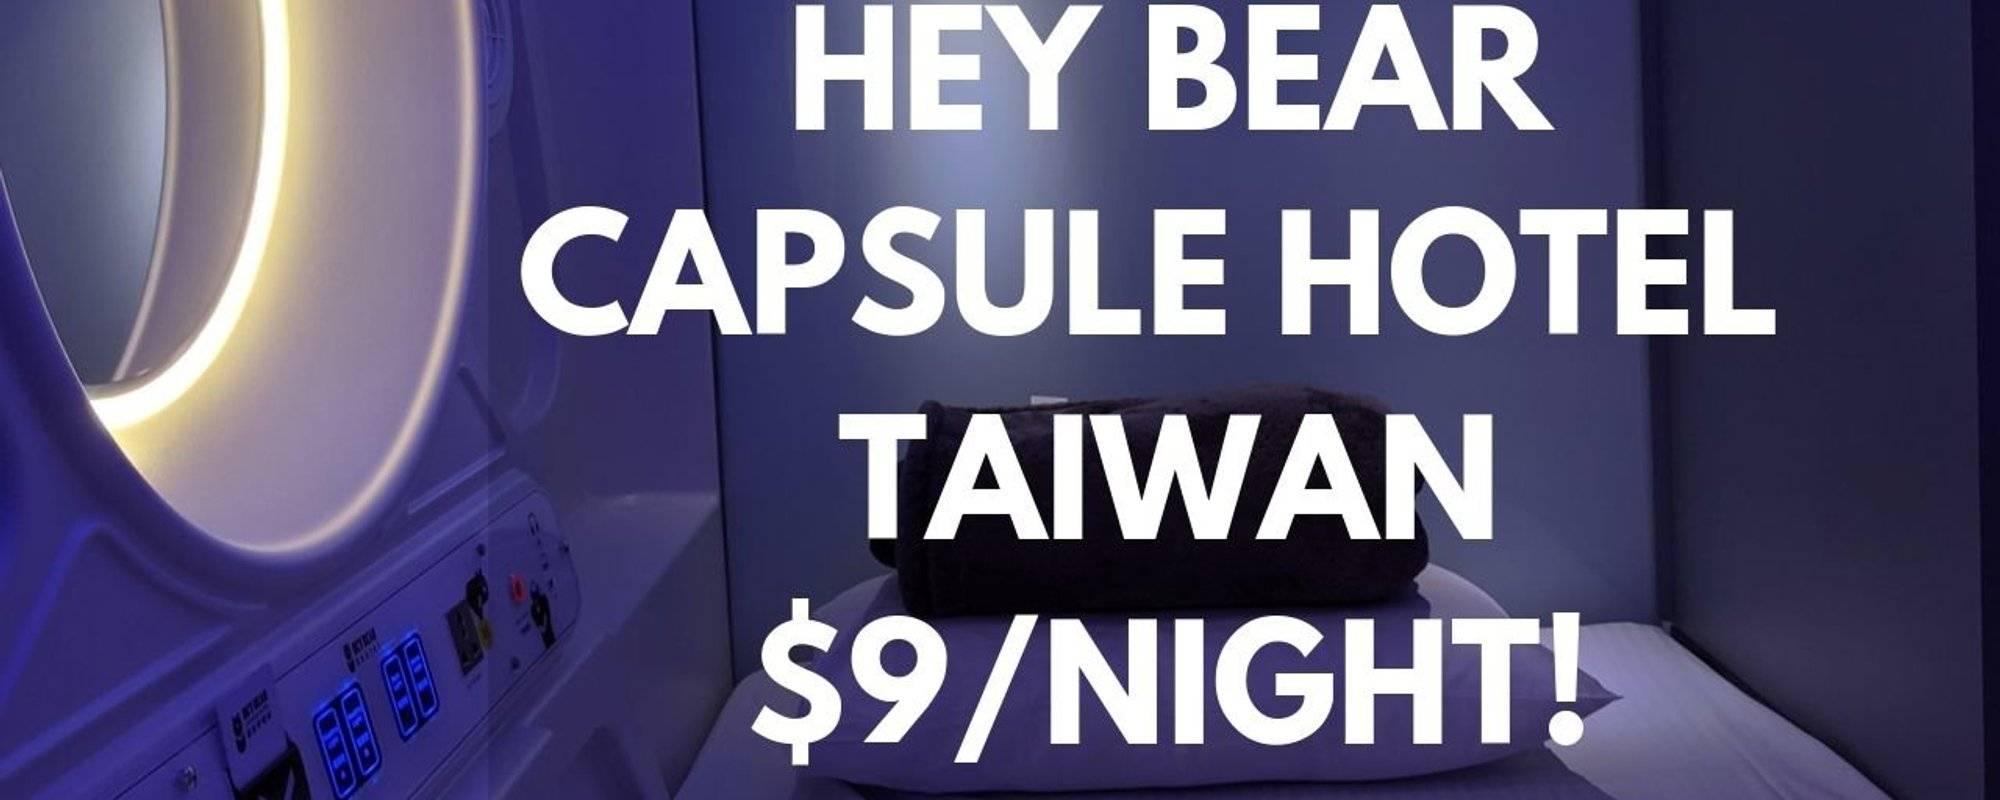 Capsule Hotel Taiwan: $9/night at Hey Bear